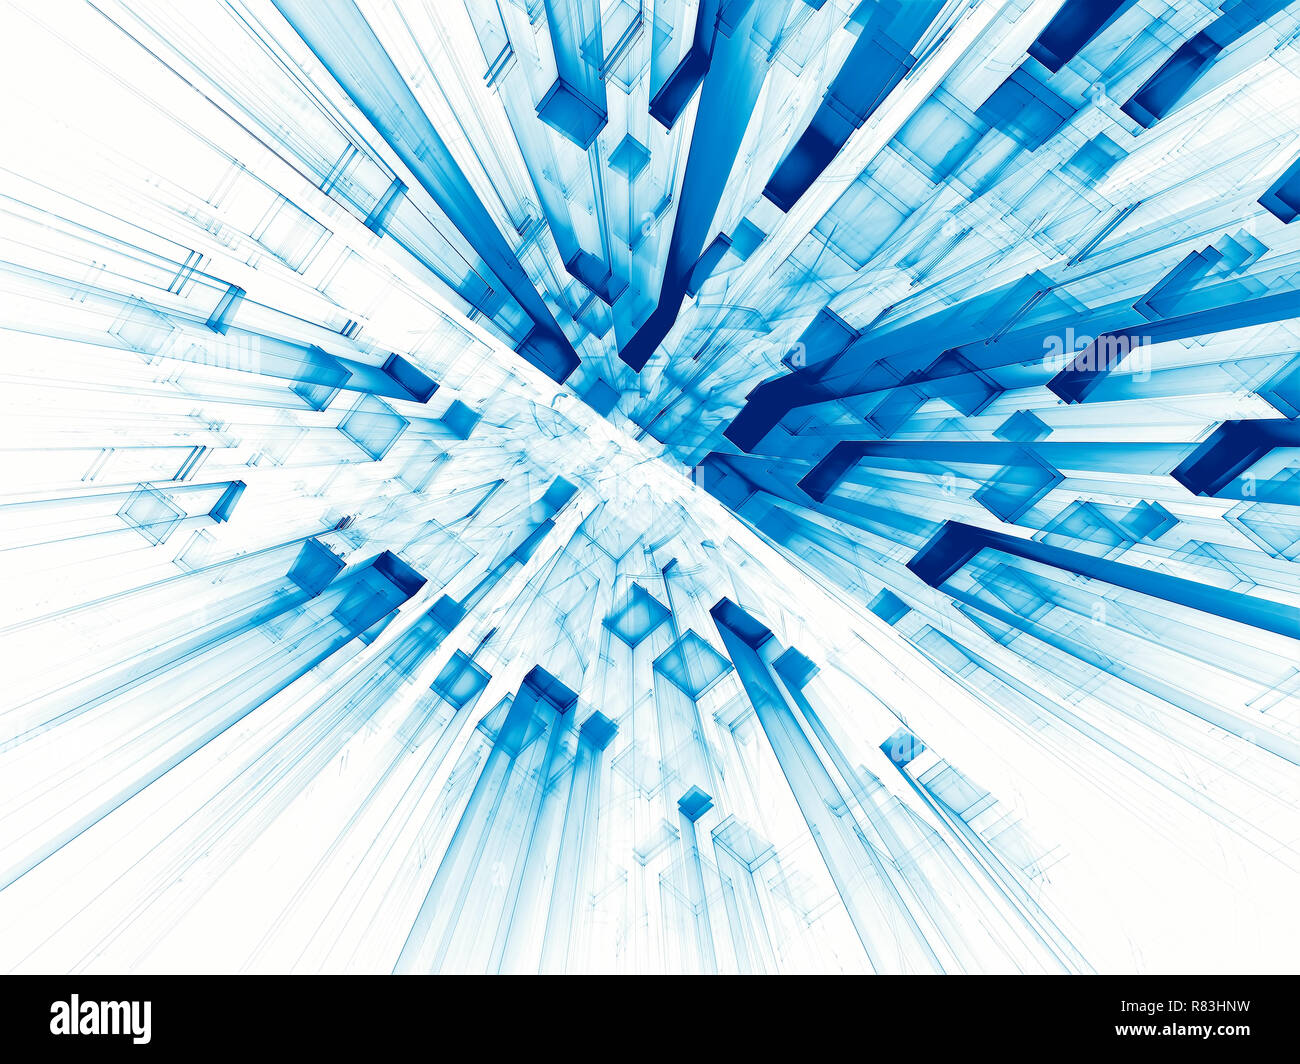 Abstrakte weißen und blauen Hintergrund - computer-generierten 3D-Darstellung. Hintergrund mit Perspektive - Stadt der Zukunft, Daten der Wissenschaft oder Sci-fi-Konzept. Für Stockfoto